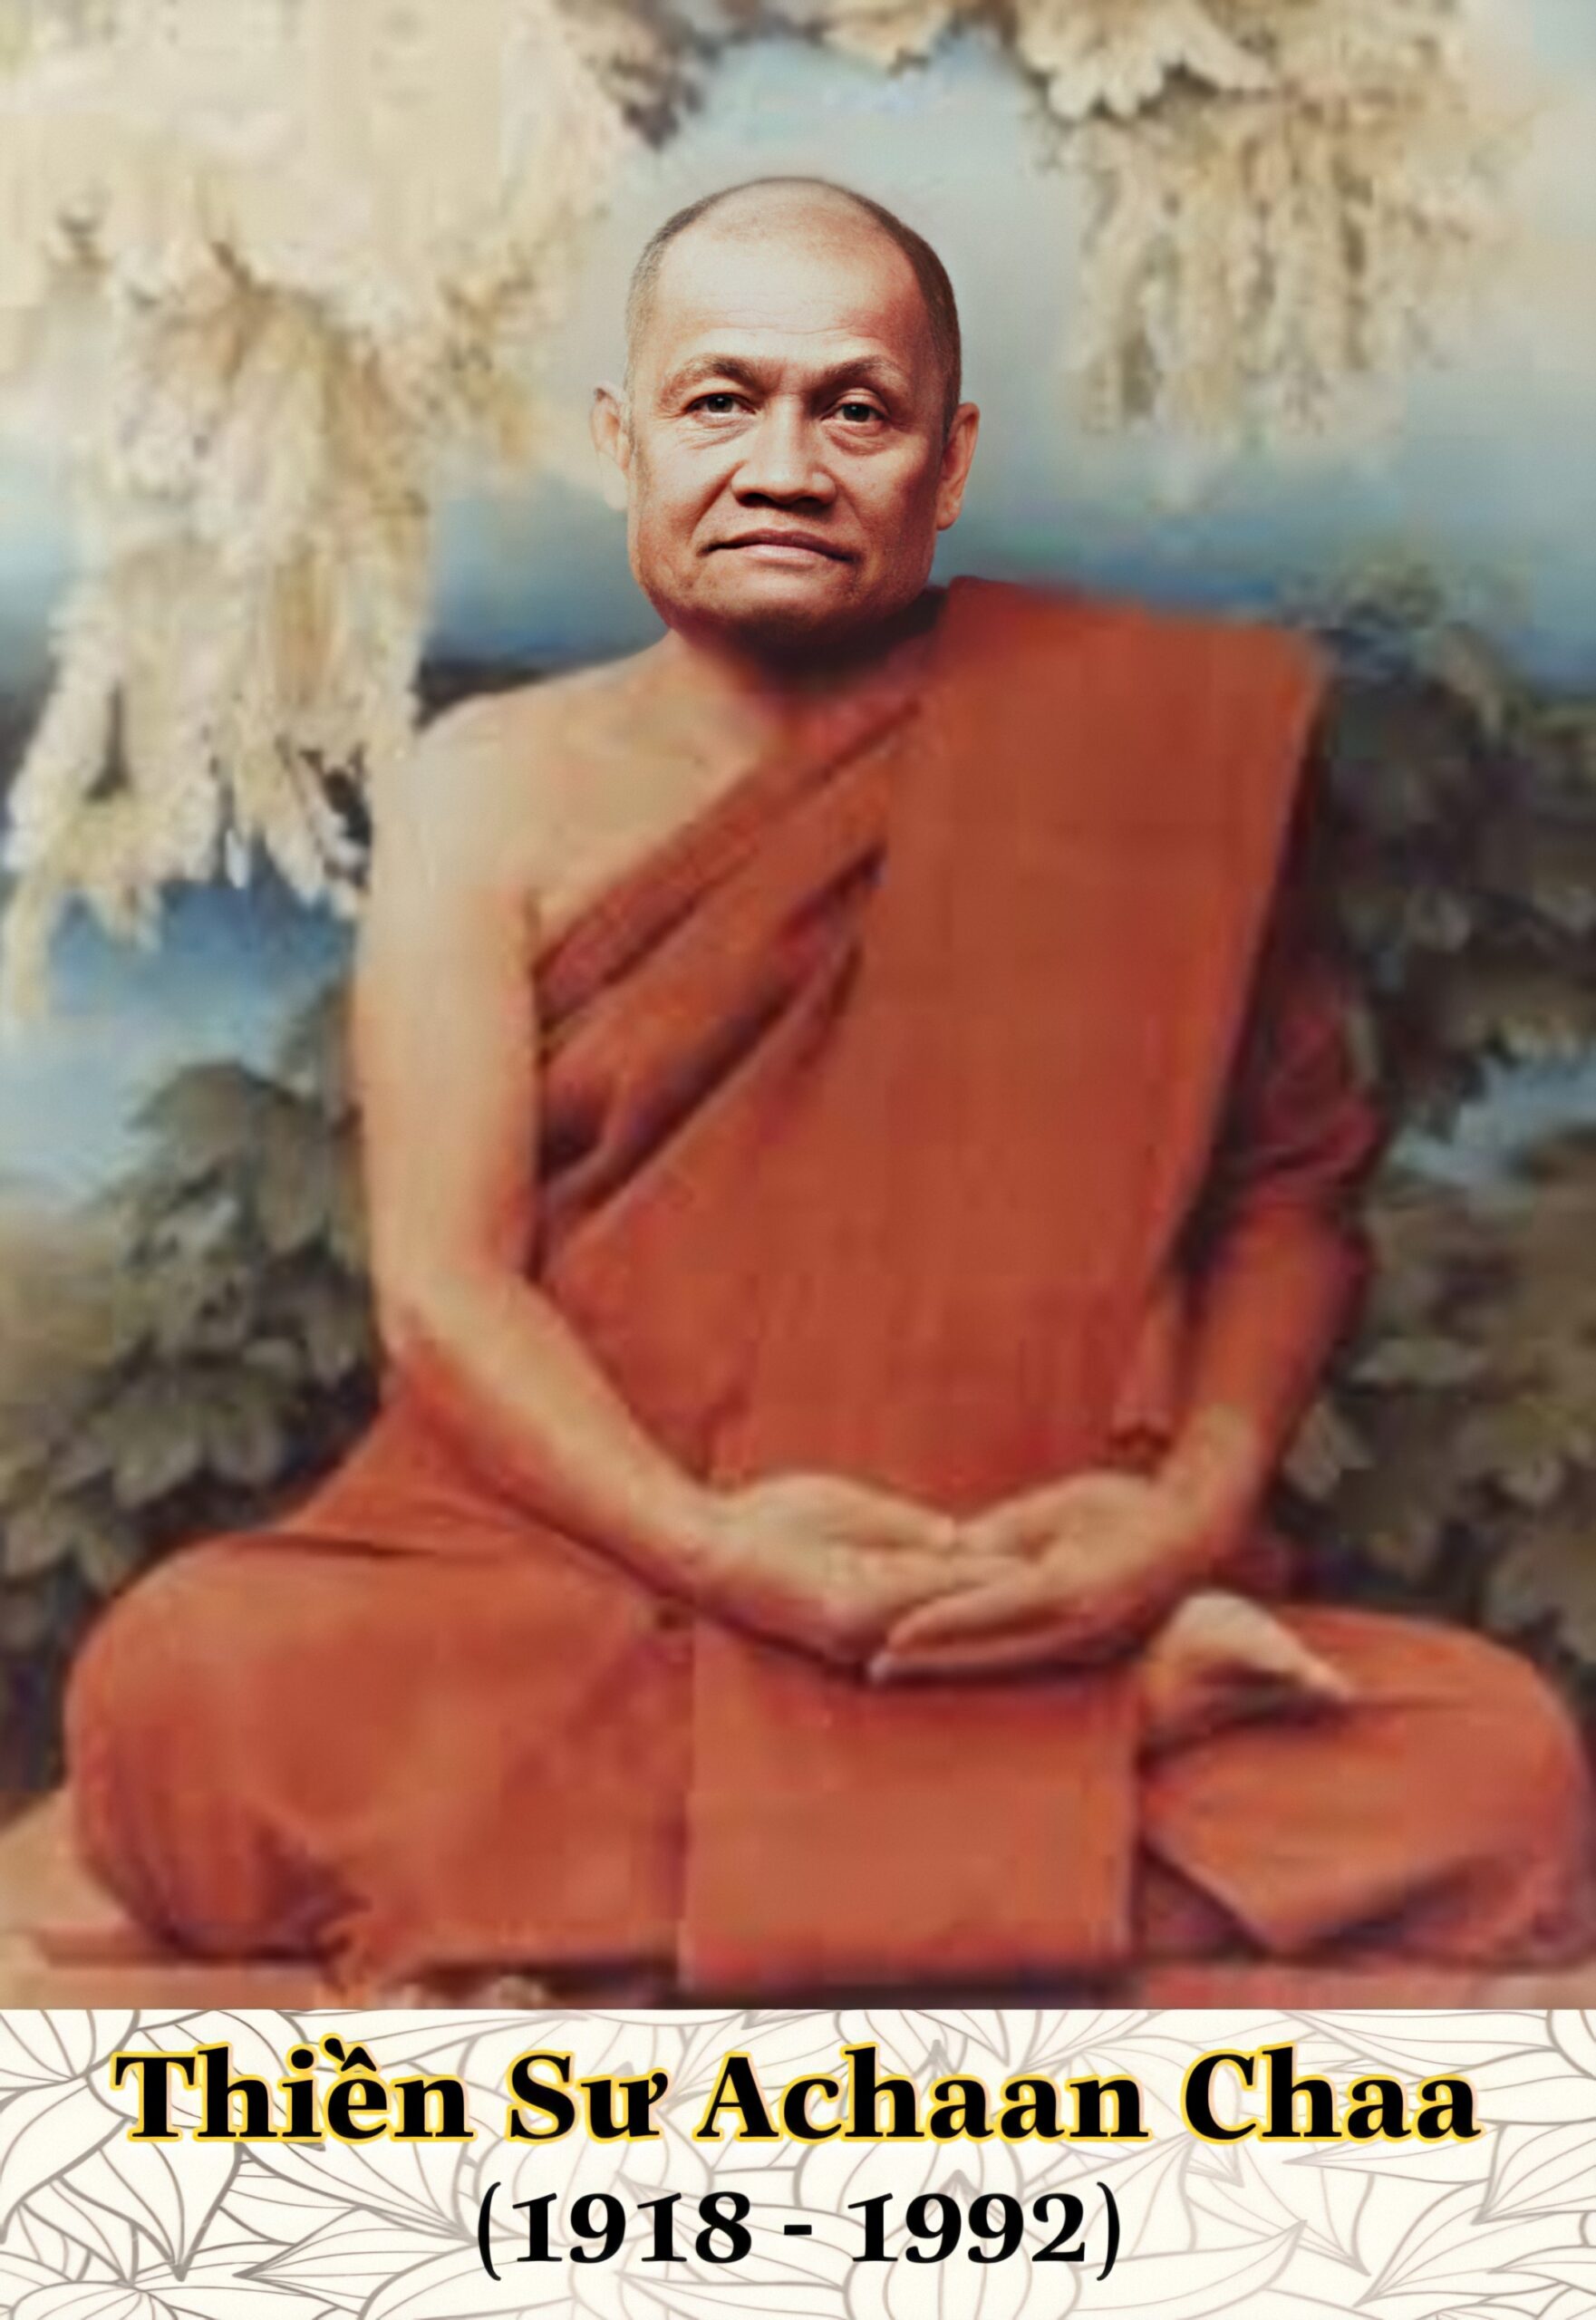 Thiền sư Achaan Chaa scaled